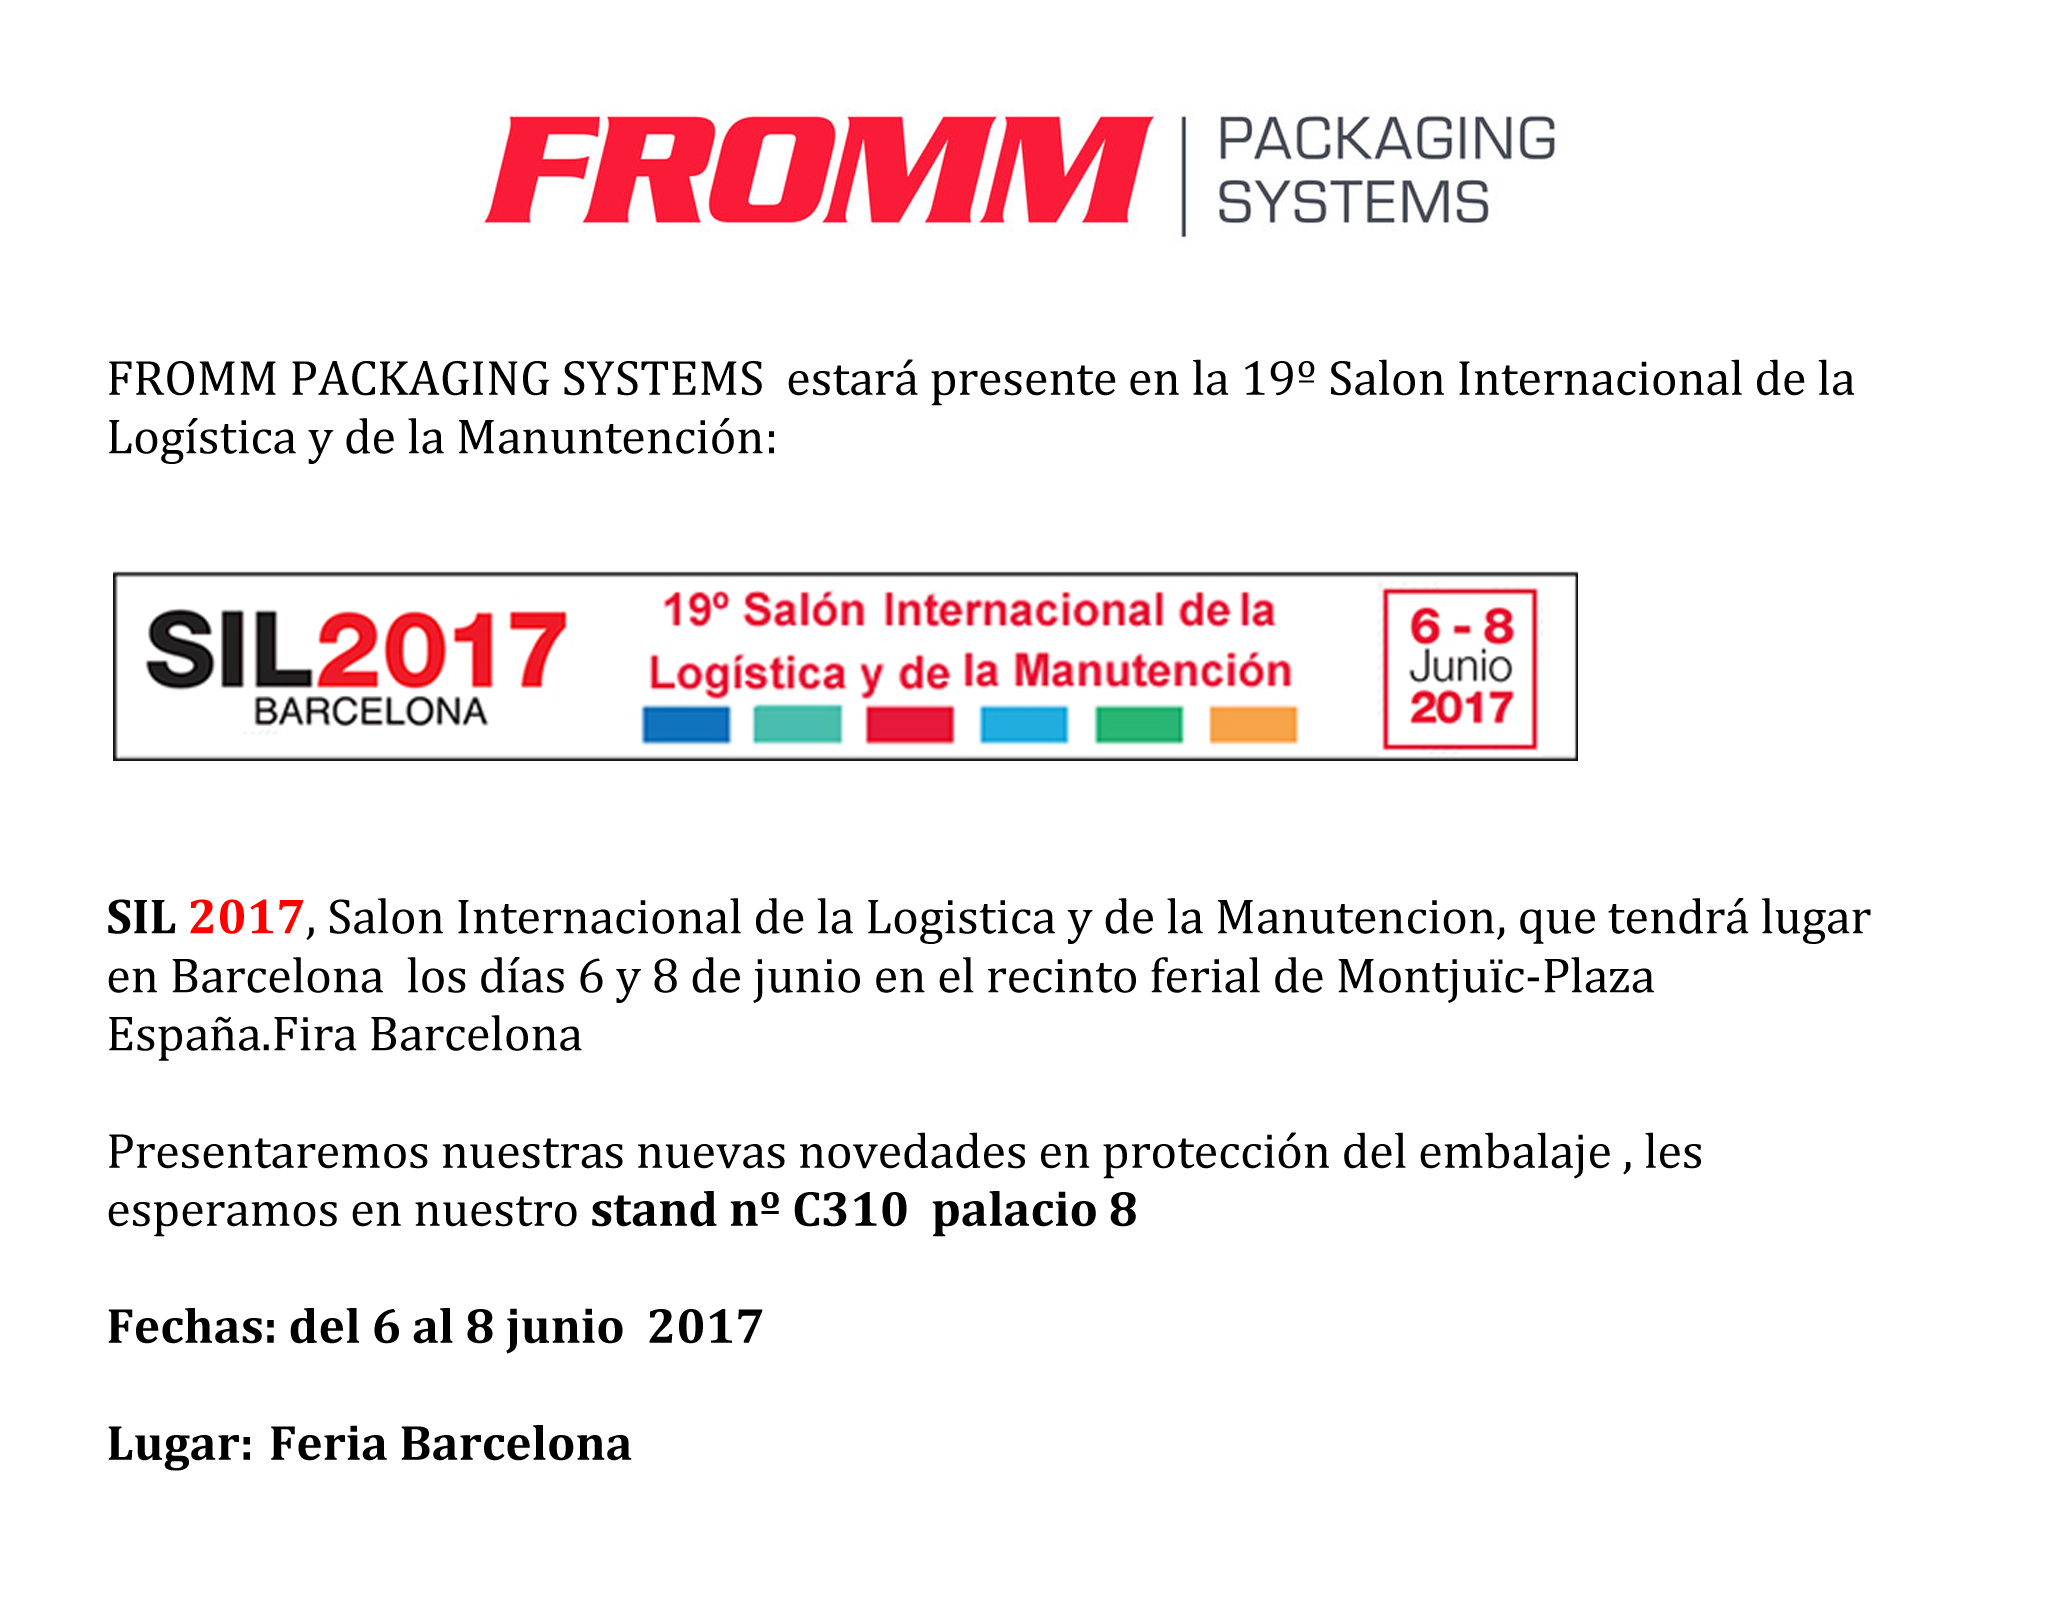 FROMM asistirá a SIL 2017 Barcelona